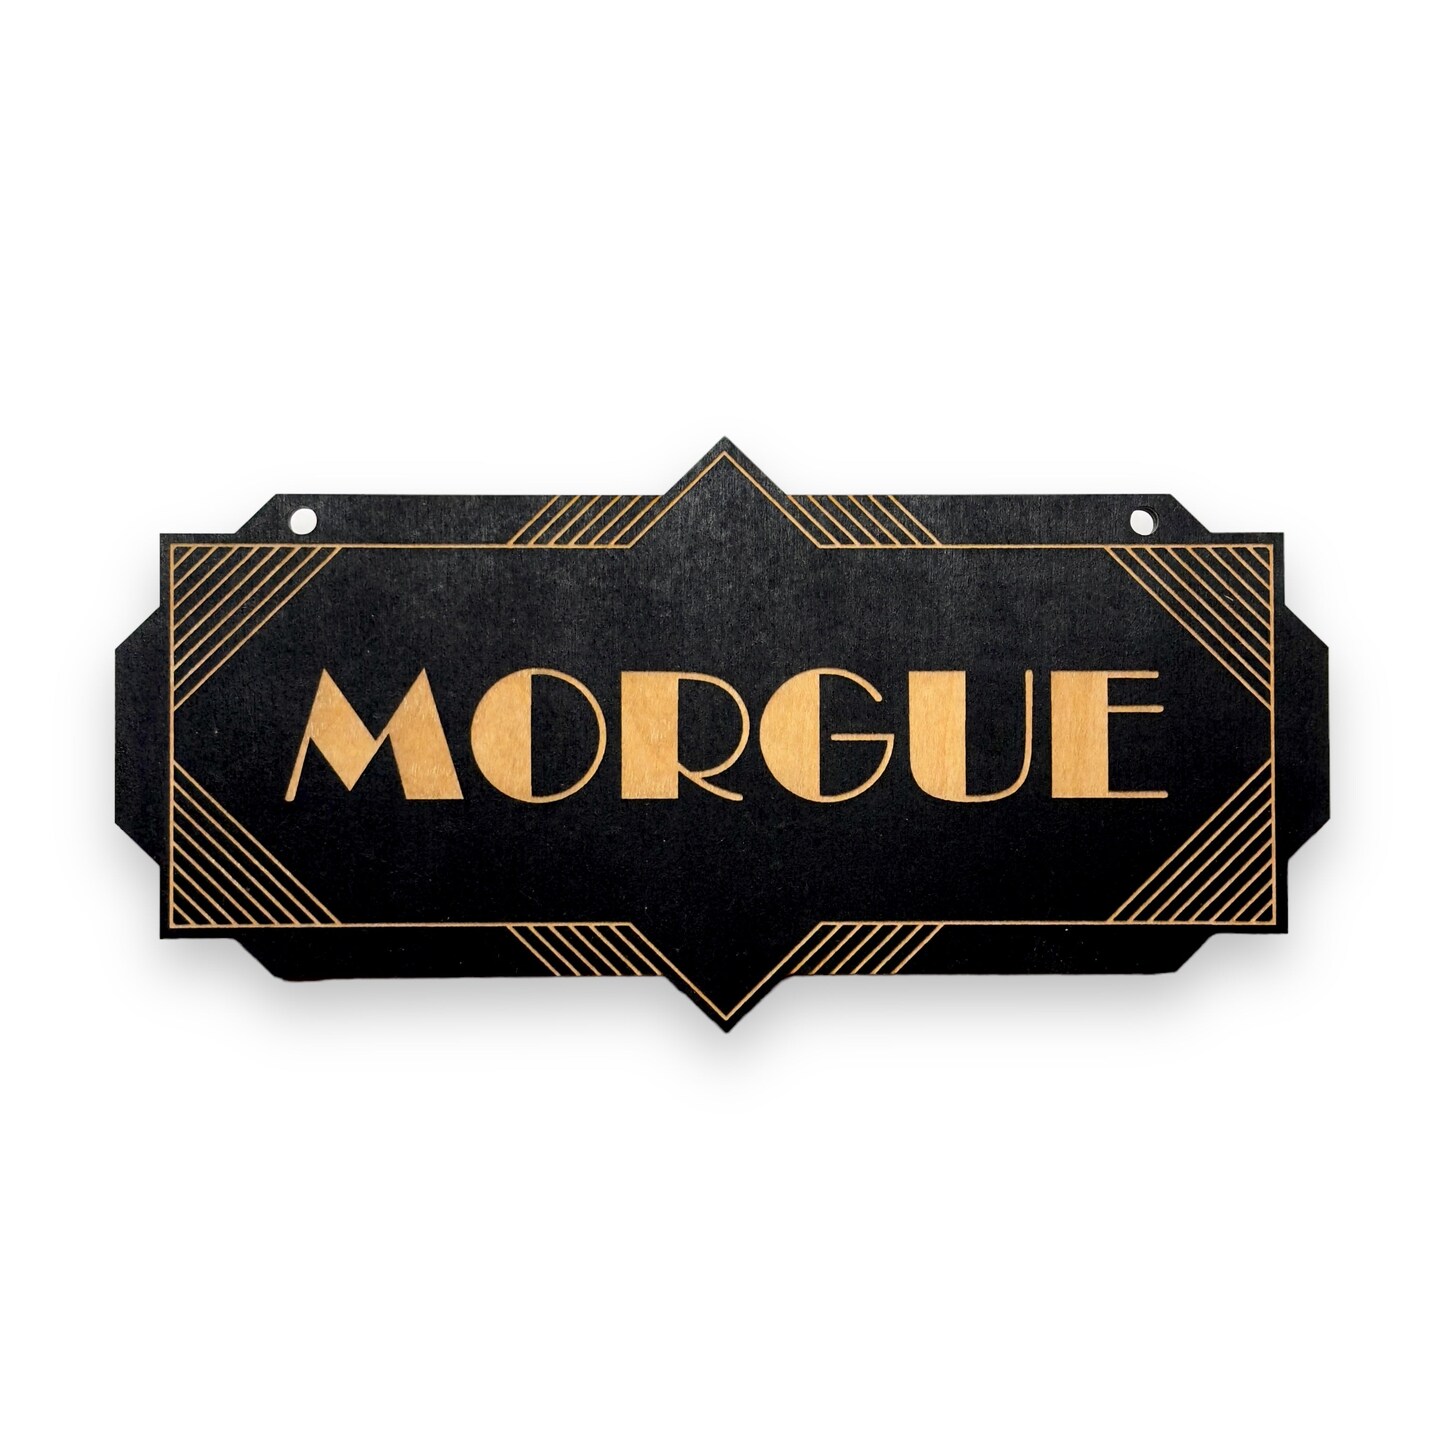 Morgue - Black - CUSTOM - Halloween Door Sign